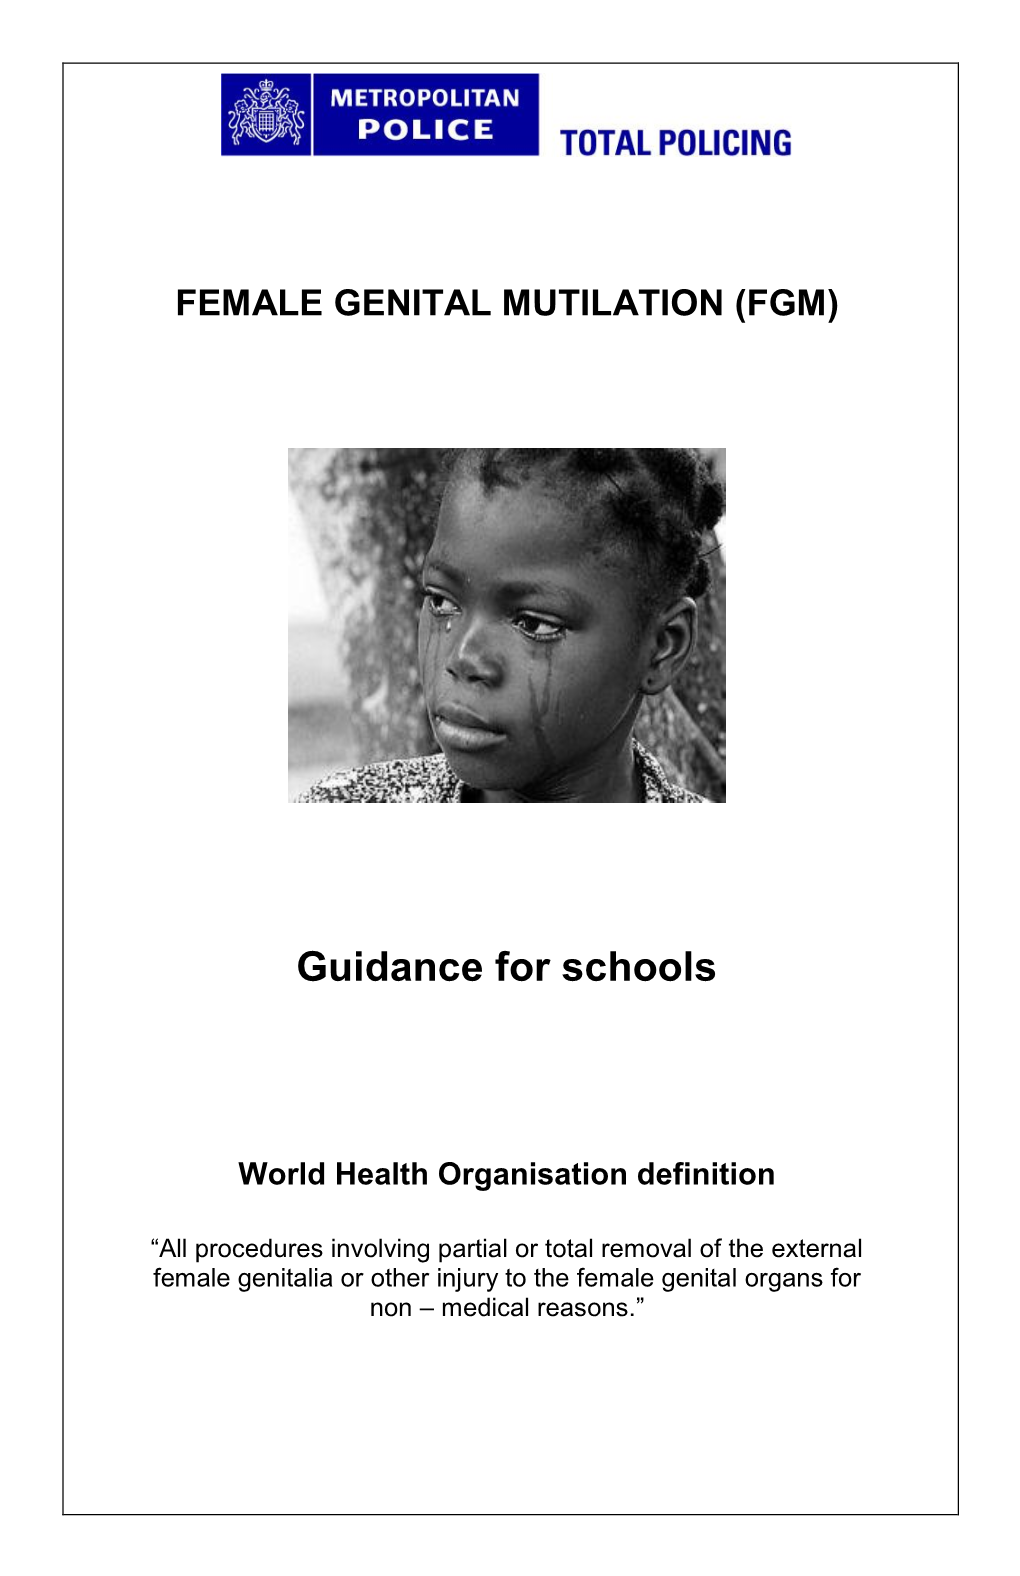 Female Genital Mutilation (FGM): Guidance for Schools